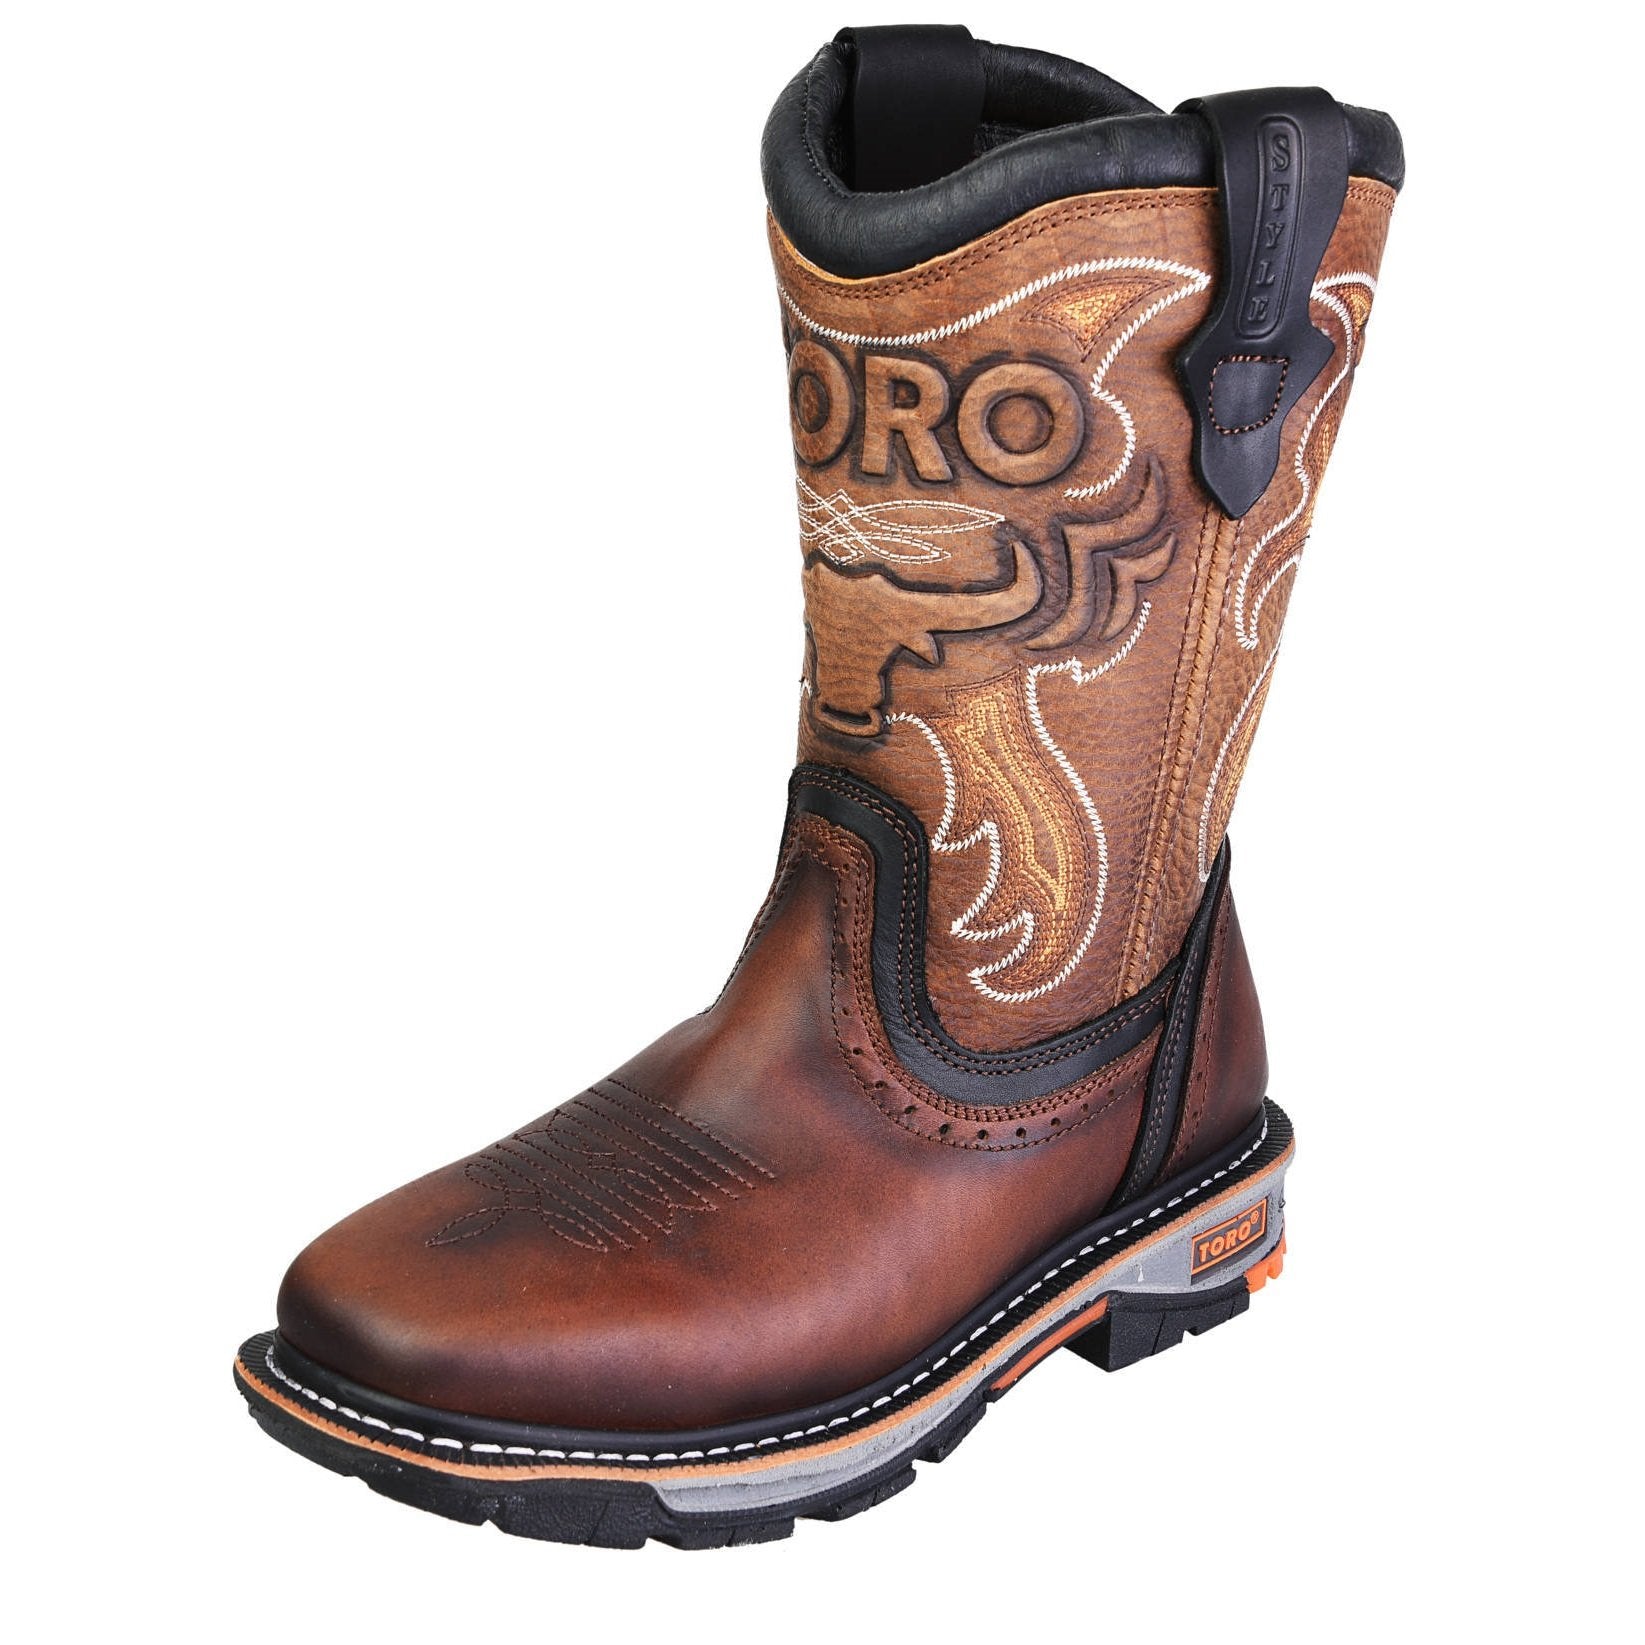 Botas de trabajo de vaquero - Punta cuadrada Toro Bravo Boots Punta de acero, punta de material compuesto e impresión – Cebu boots